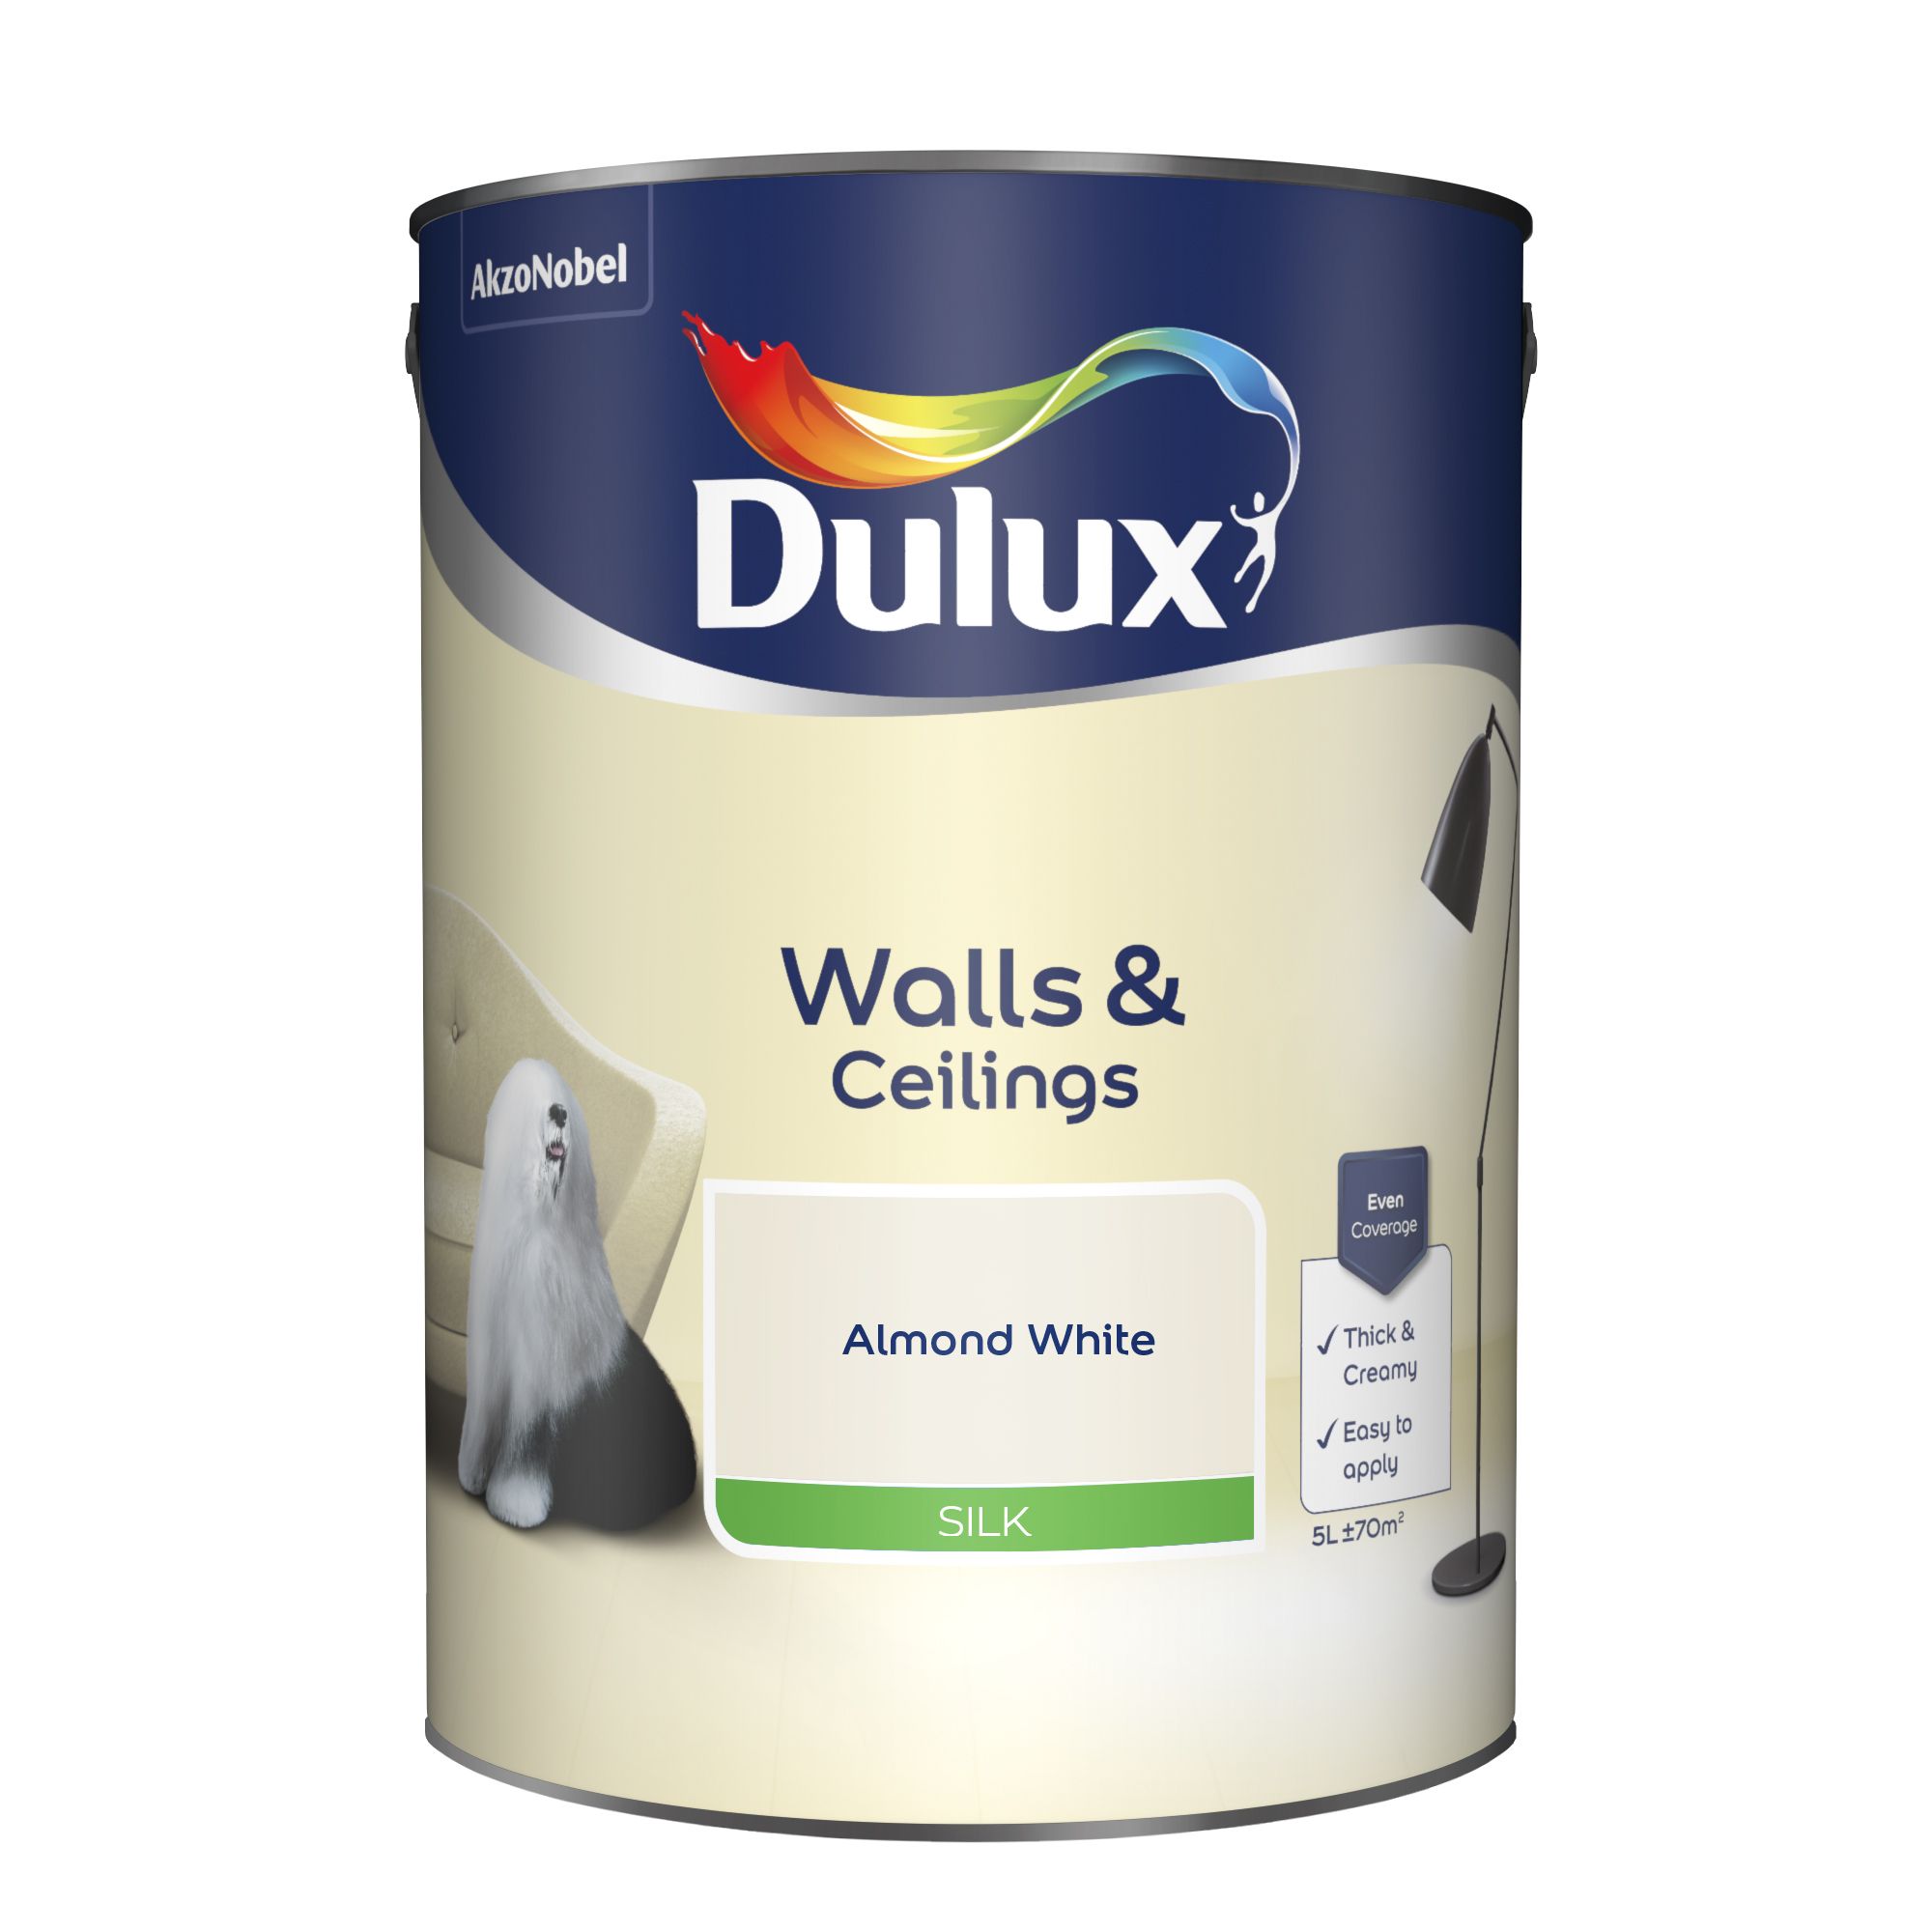 Dulux Walls & ceilings Almond white Silk Emulsion paint, 5L